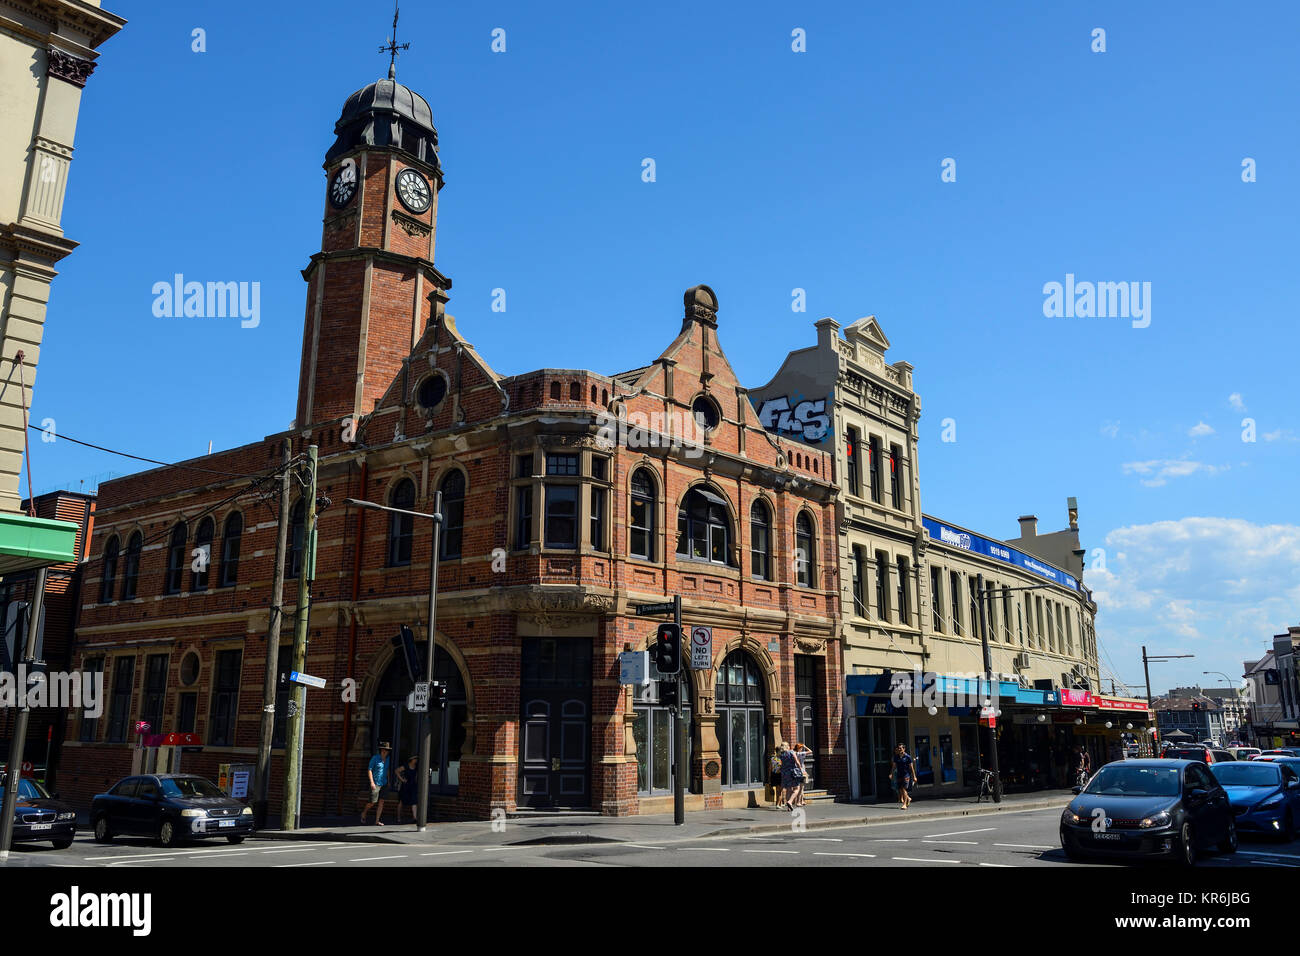 Edifici Vittoriani restaurati su King Street, la principale strada transitabile nel sobborgo di Newtown, Sydney, Nuovo Galles del Sud, Australia Foto Stock